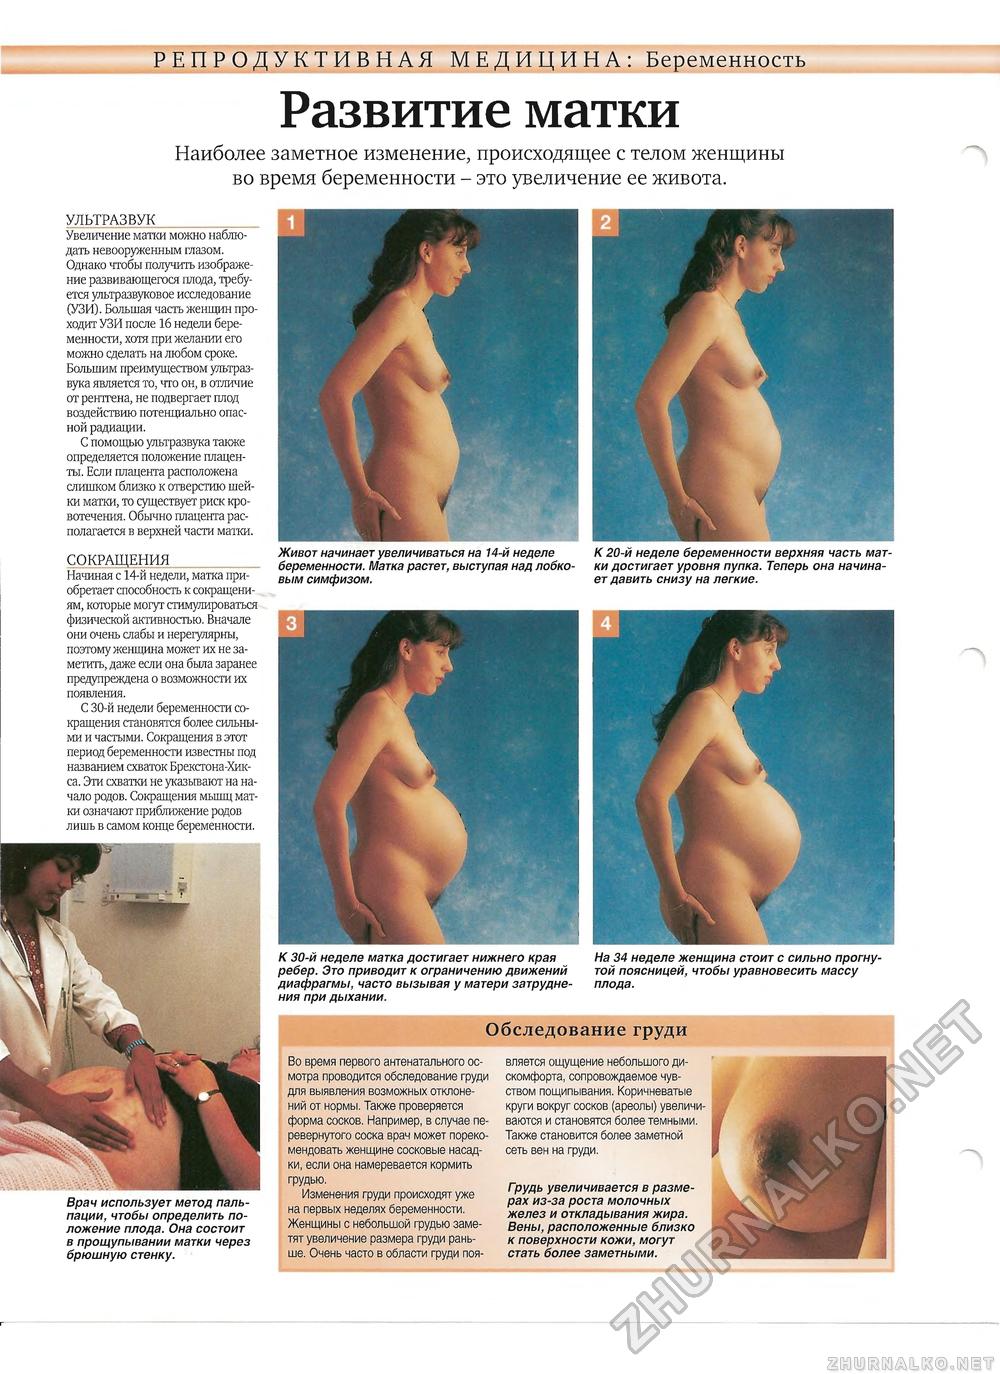 2 месяц беременности грудь не фото 12